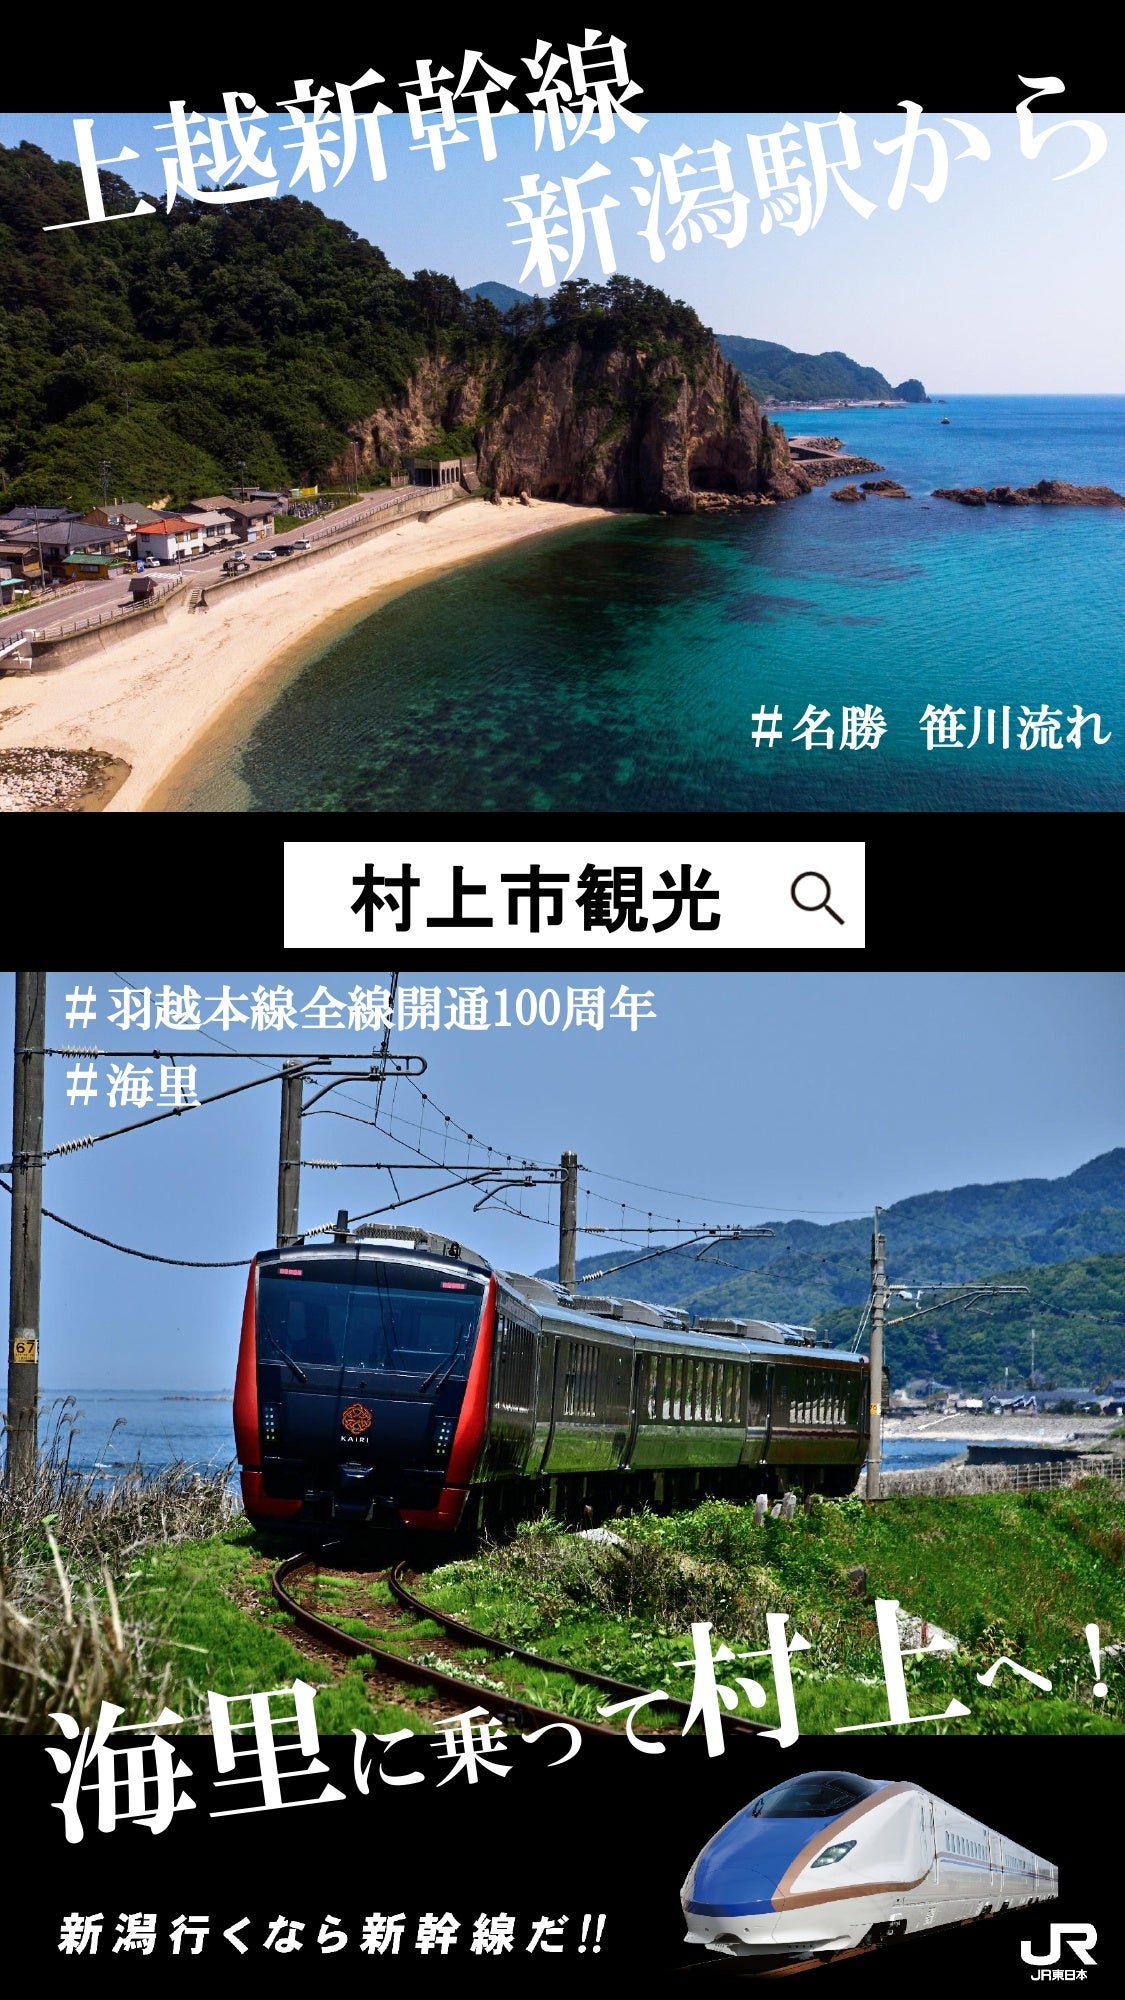 首都圏の一部駅で、村上エリアと越後湯沢エリアを中心とした新潟県のスポットをデジタルサイネージで発信